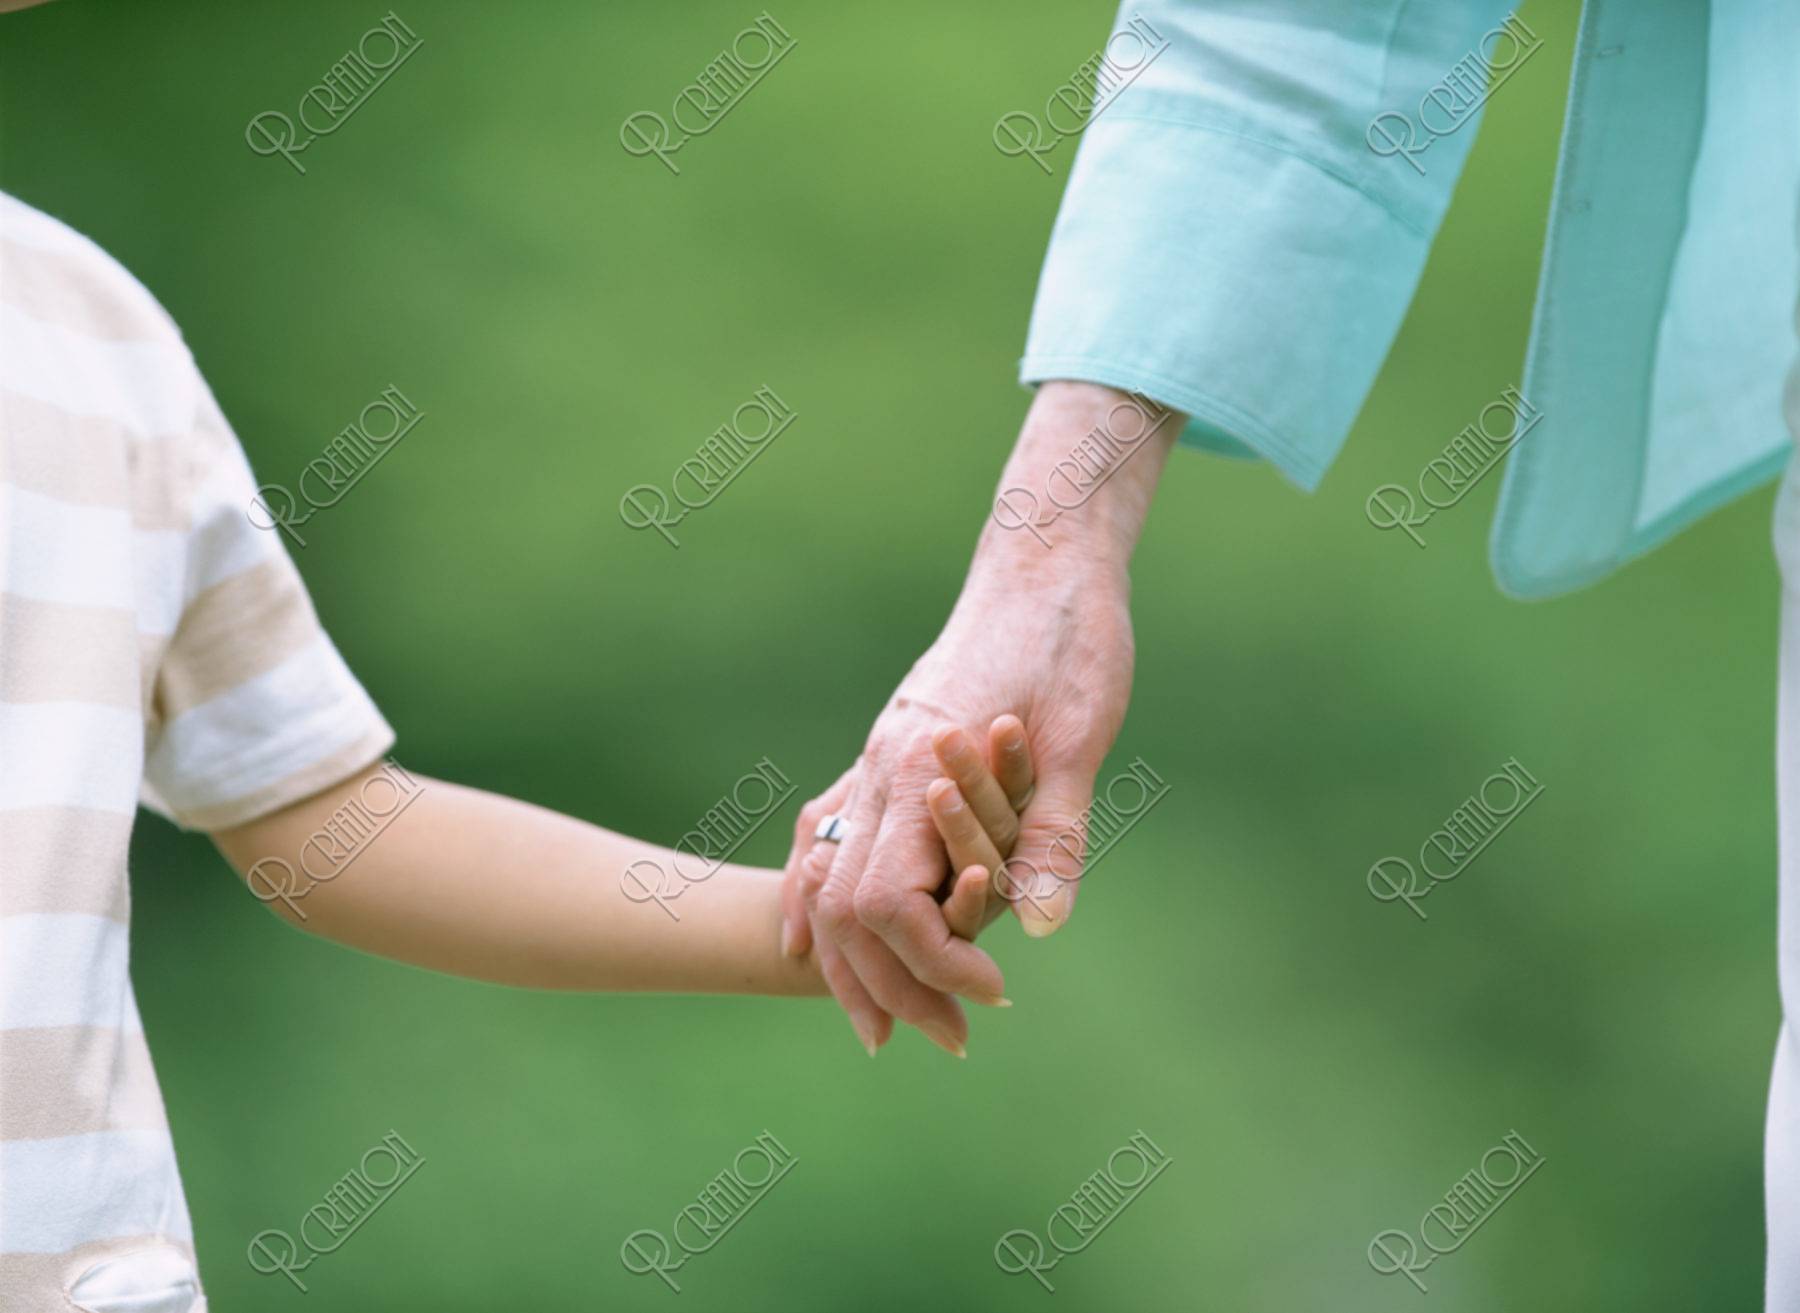 祖母と孫の手